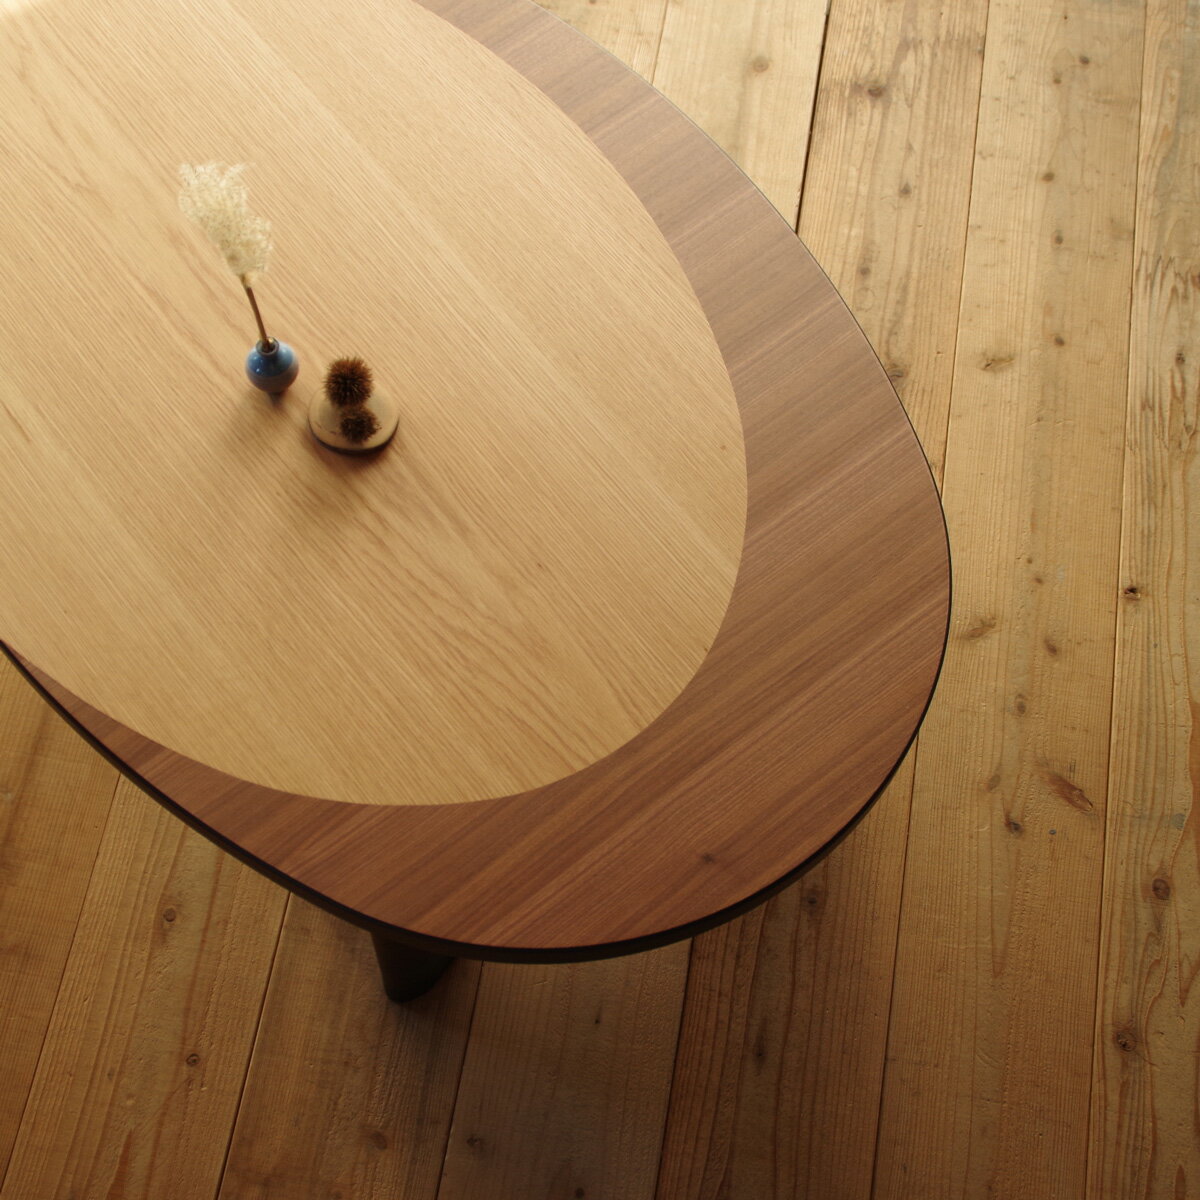 楽天setomarcheMOON LIGHTこたつ 楕円形 テーブル 120×80ナラ / ウォールナット|北欧|和風|モダン|シンプル|デザイン||おしゃれ|かわいい||円卓|座卓|ちゃぶ台||ローテーブル|センターテーブル||日本製|国産|